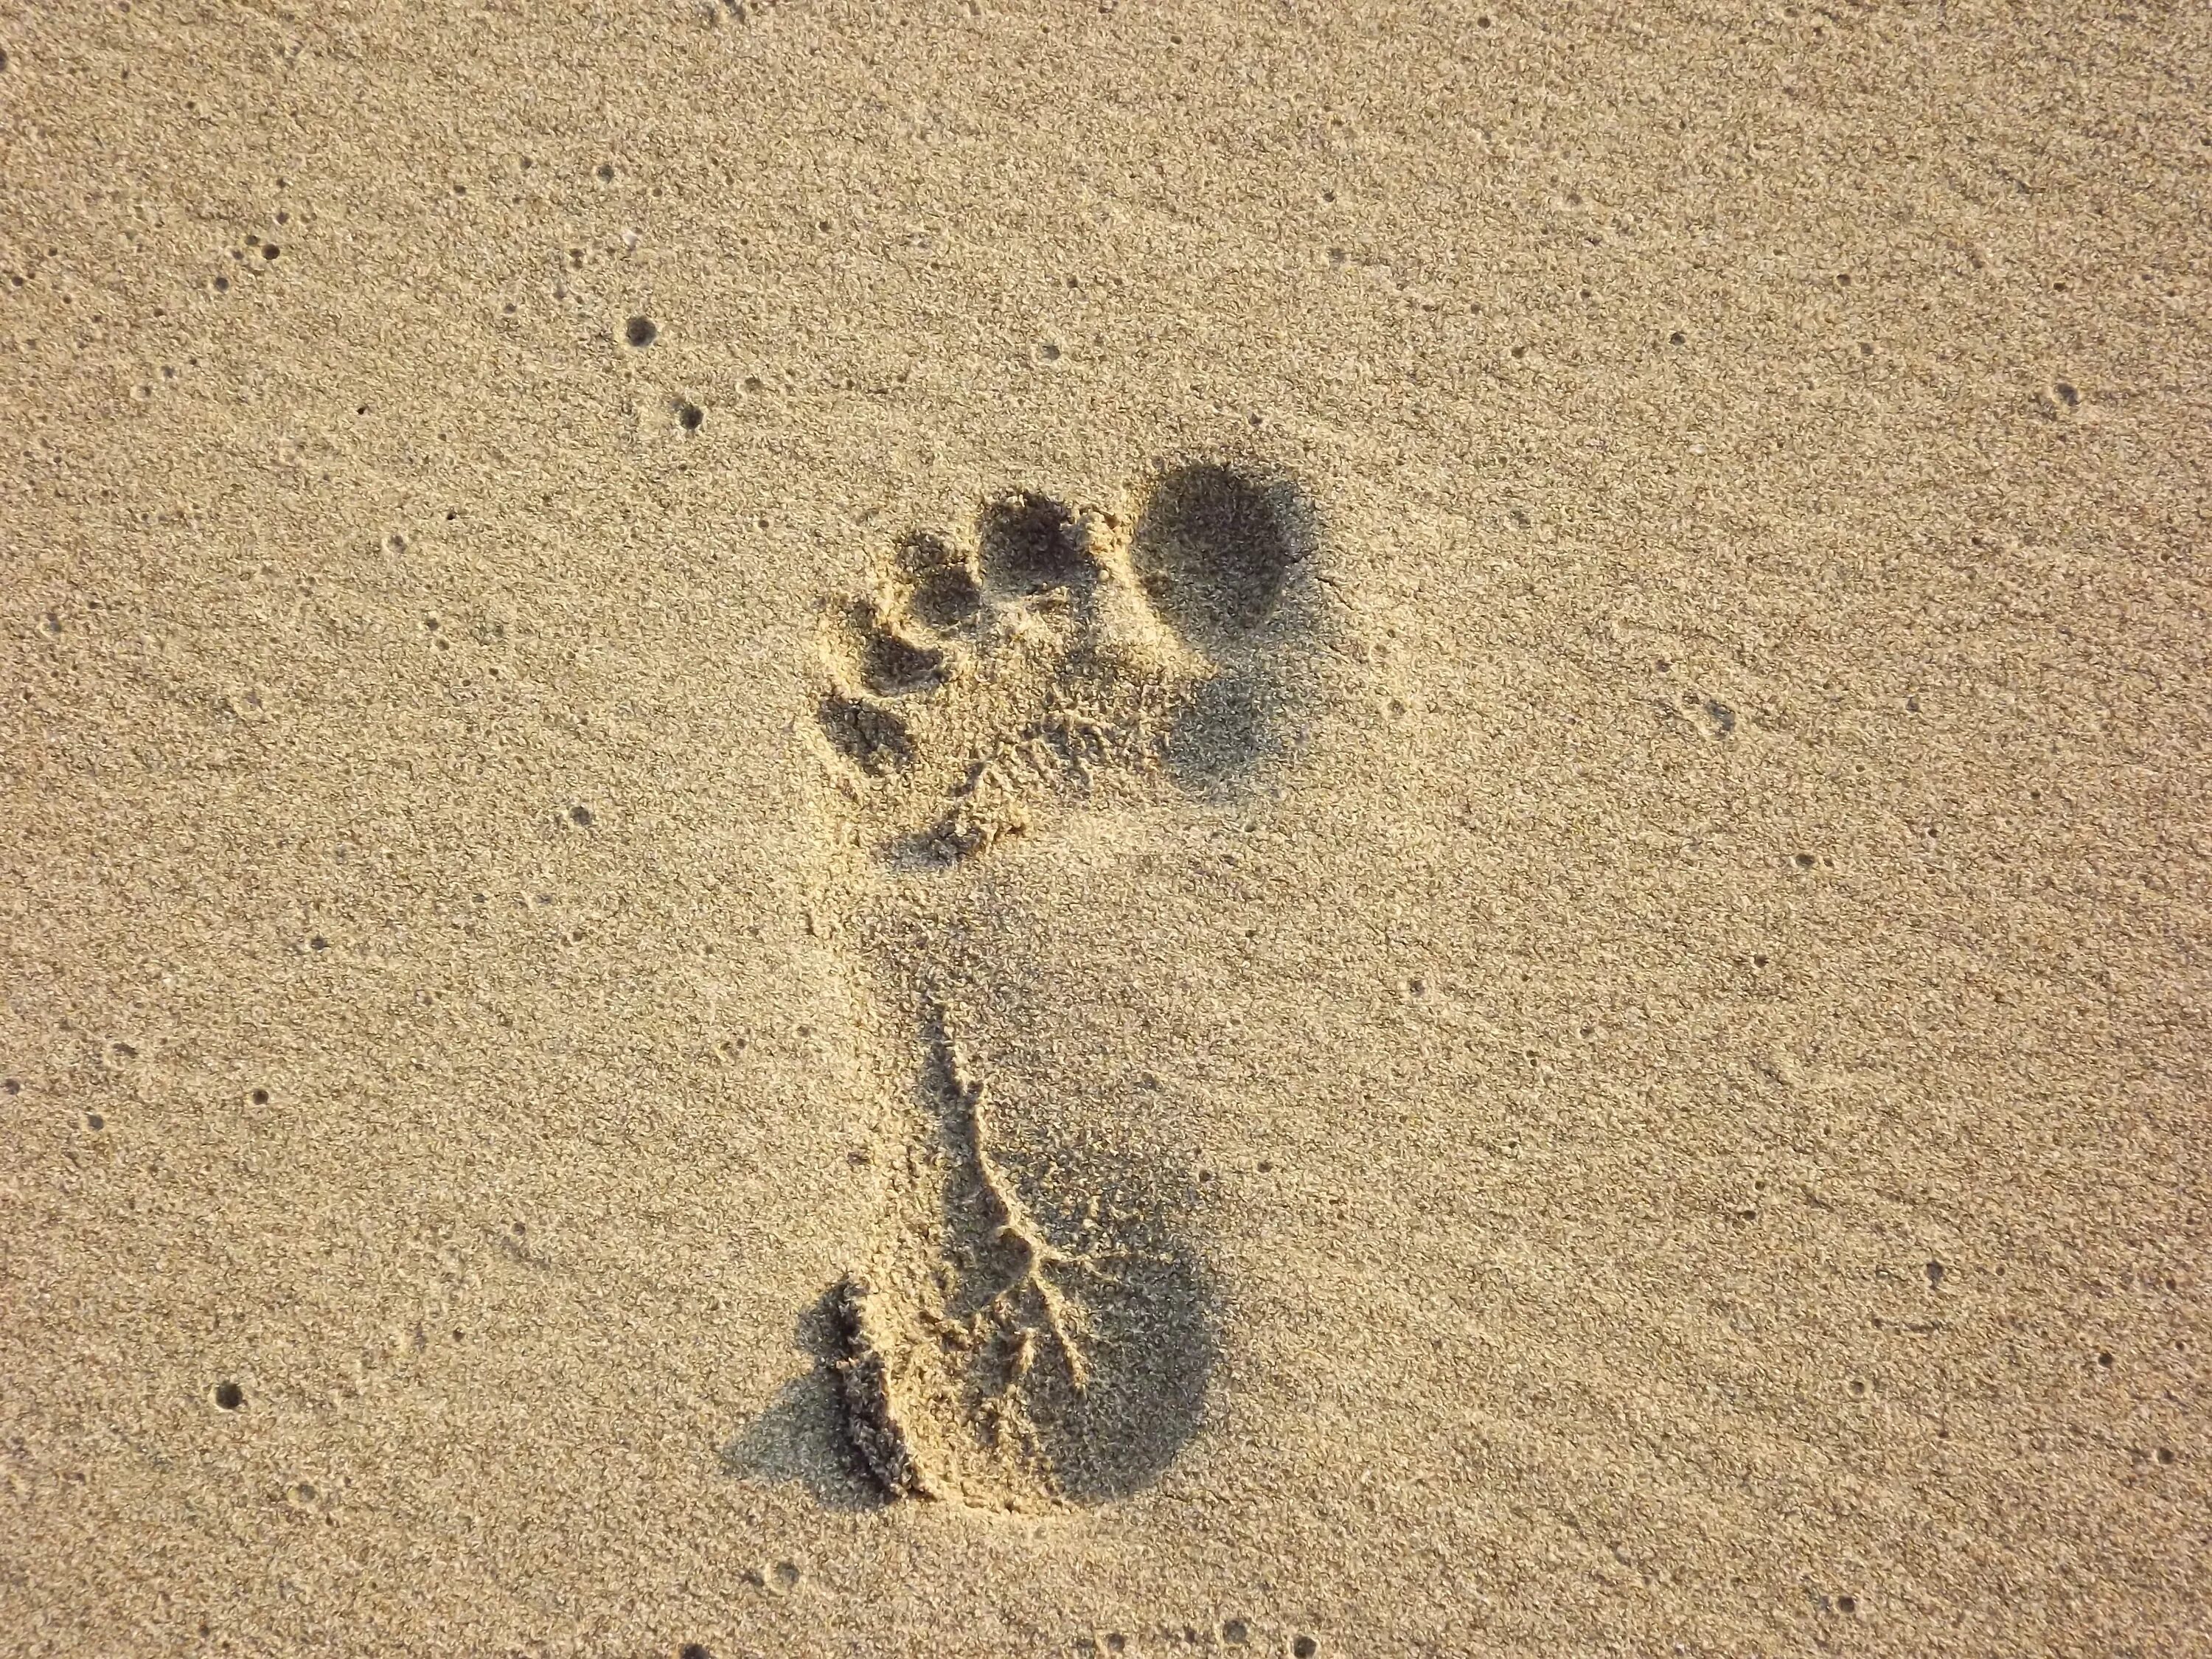 След цвет. Следы. Отпечаток ноги на песке. Поверхностные следы ног. Отпечаток босой ноги.